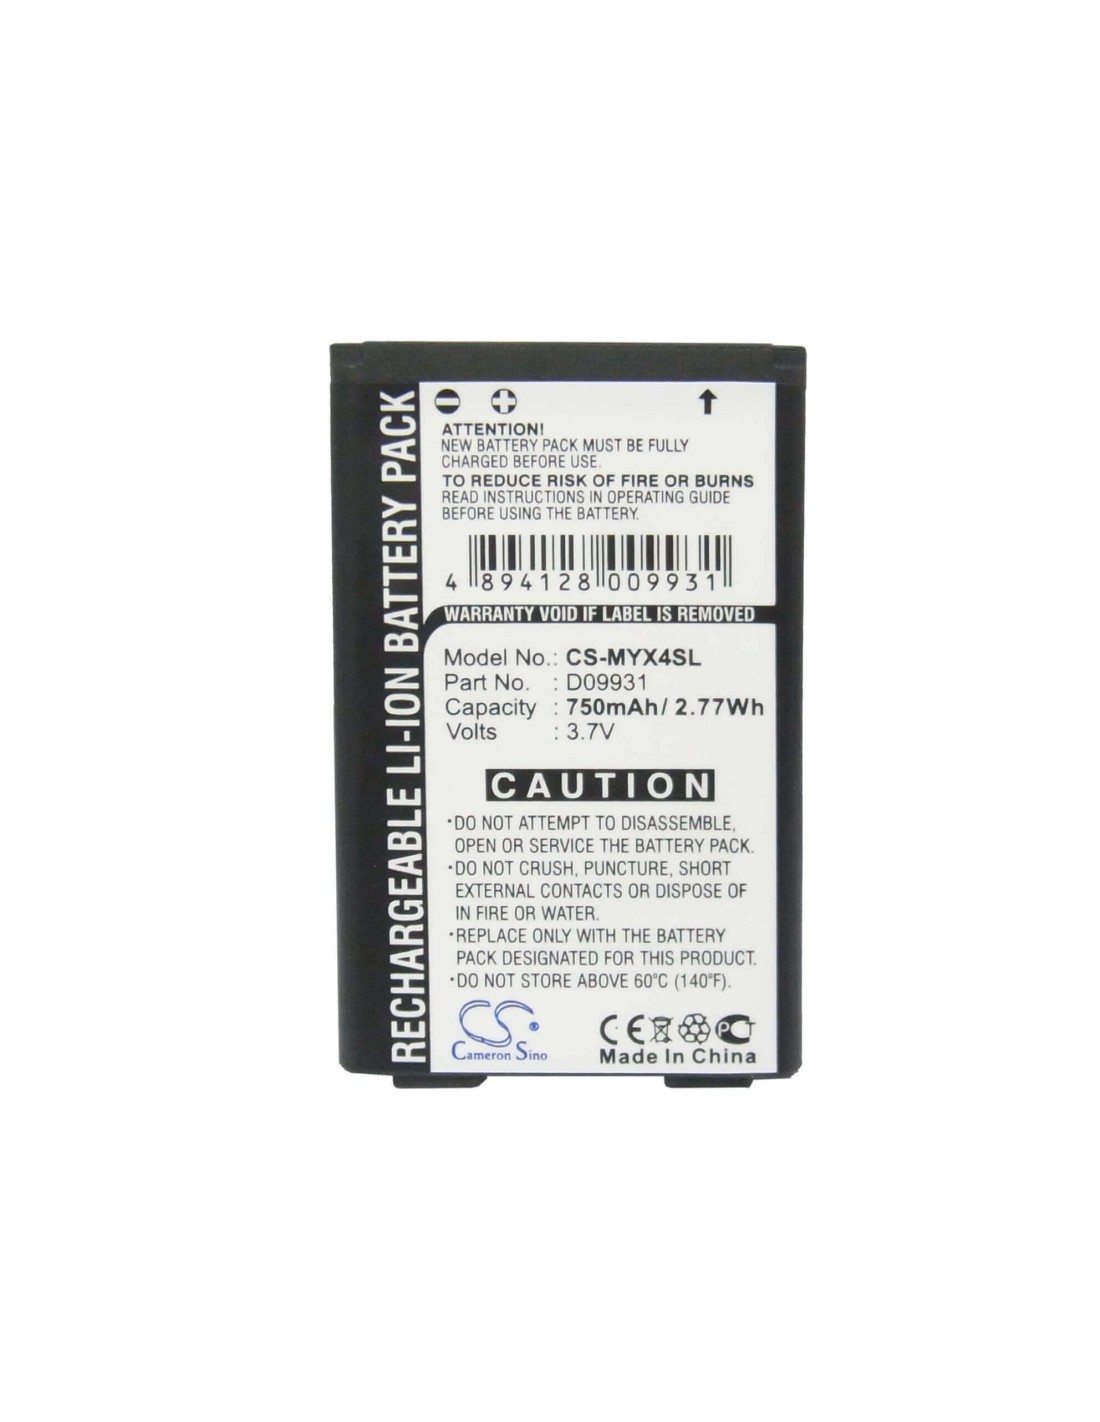 Battery for Sagem MYX4, MYX-4, MYX-4T 3.7V, 750mAh - 2.78Wh